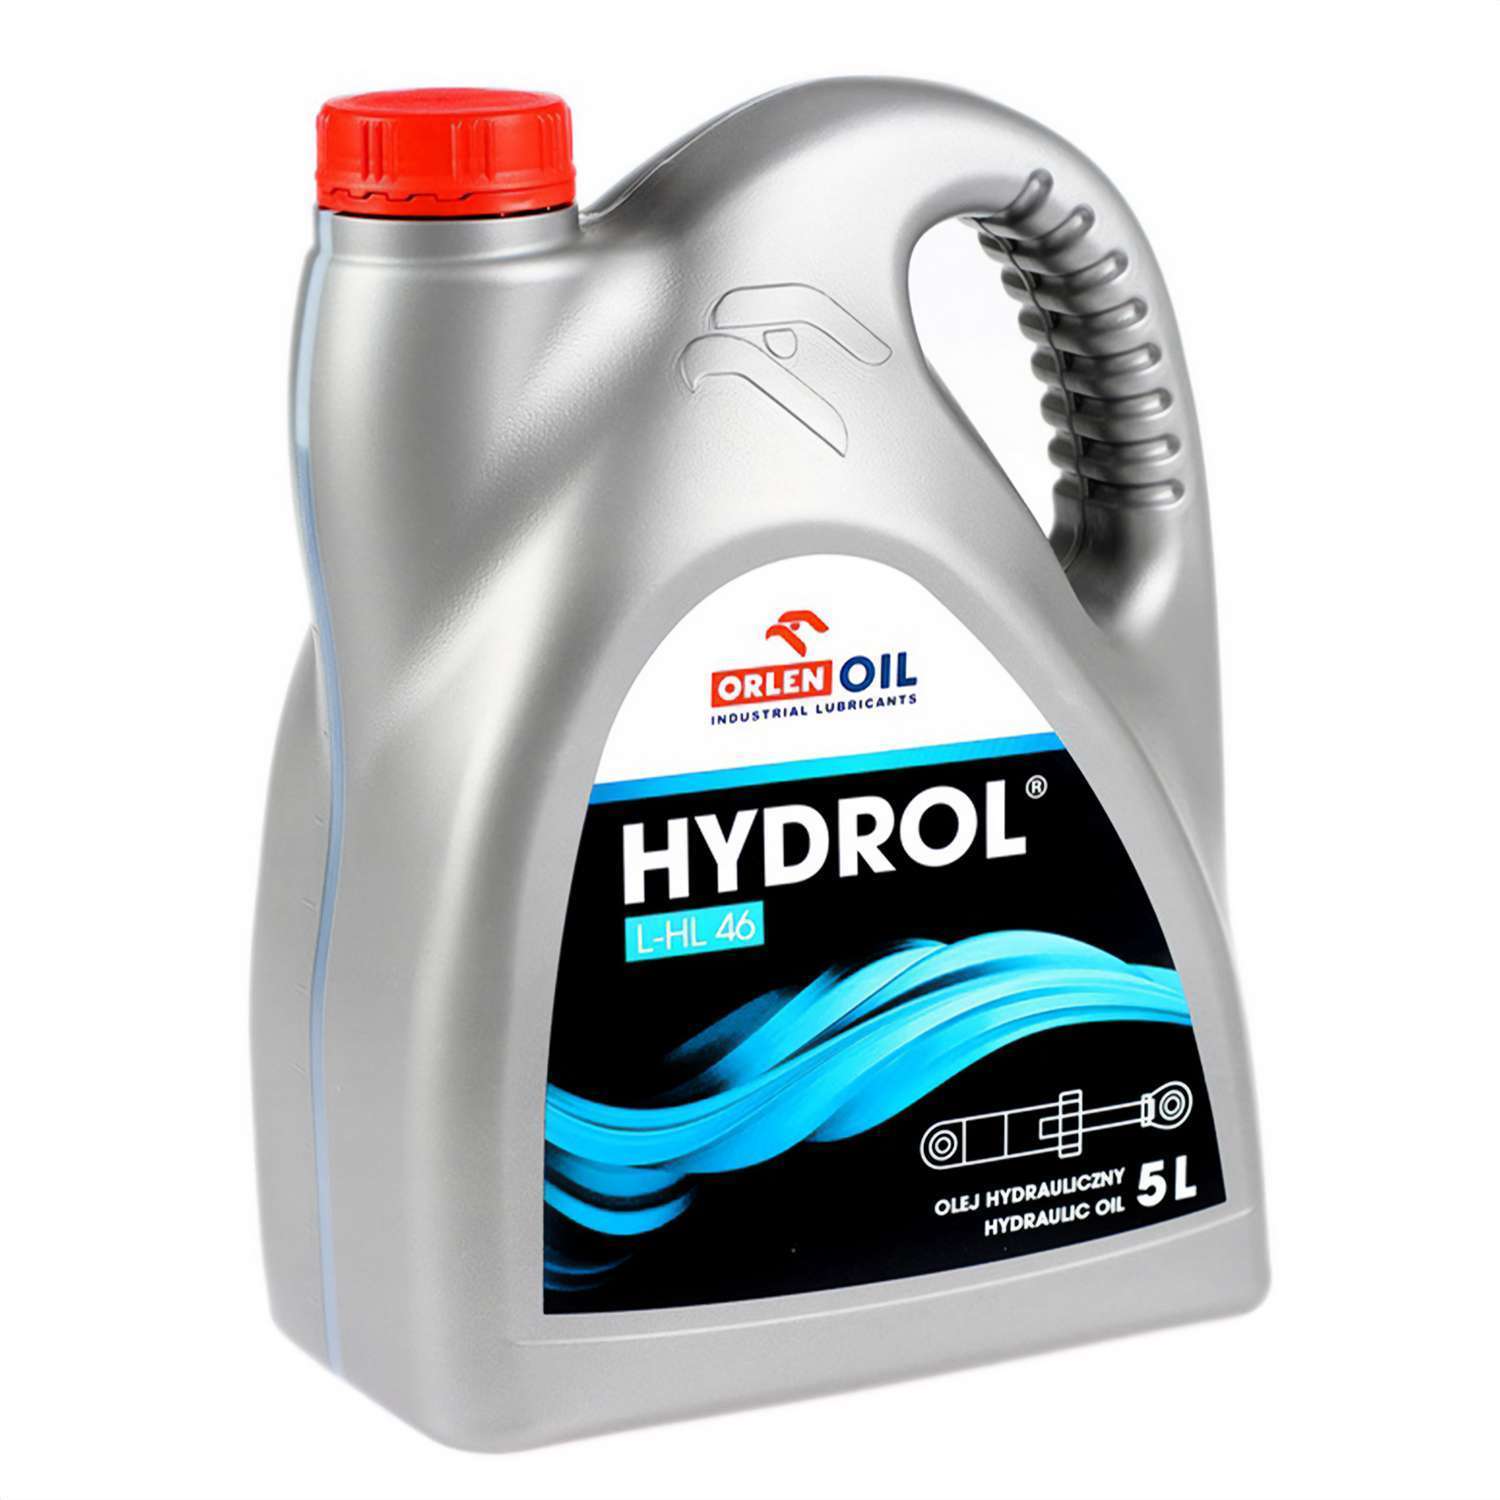 ORLEN olej hydrauliczny HYDROL L-HL 46 5L